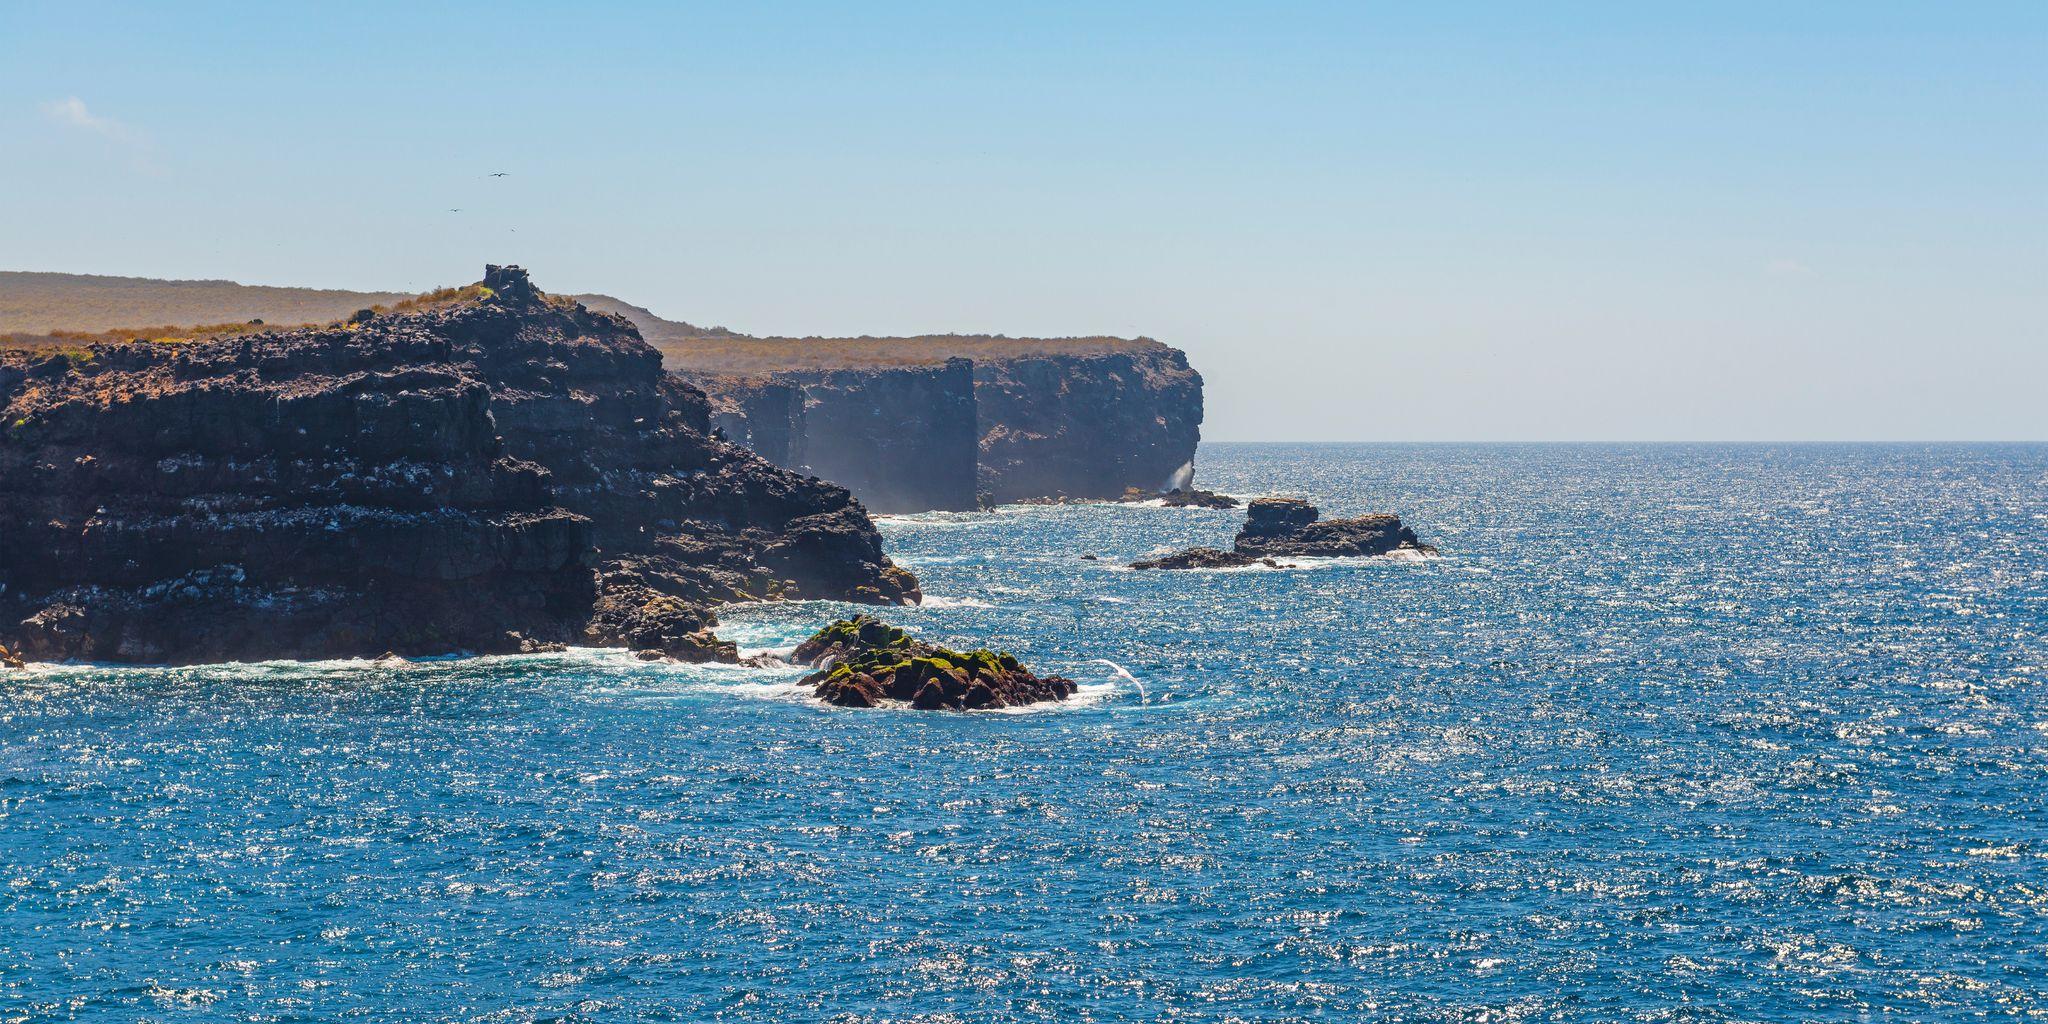 Punta Suarez, Isla Española, Galápagos